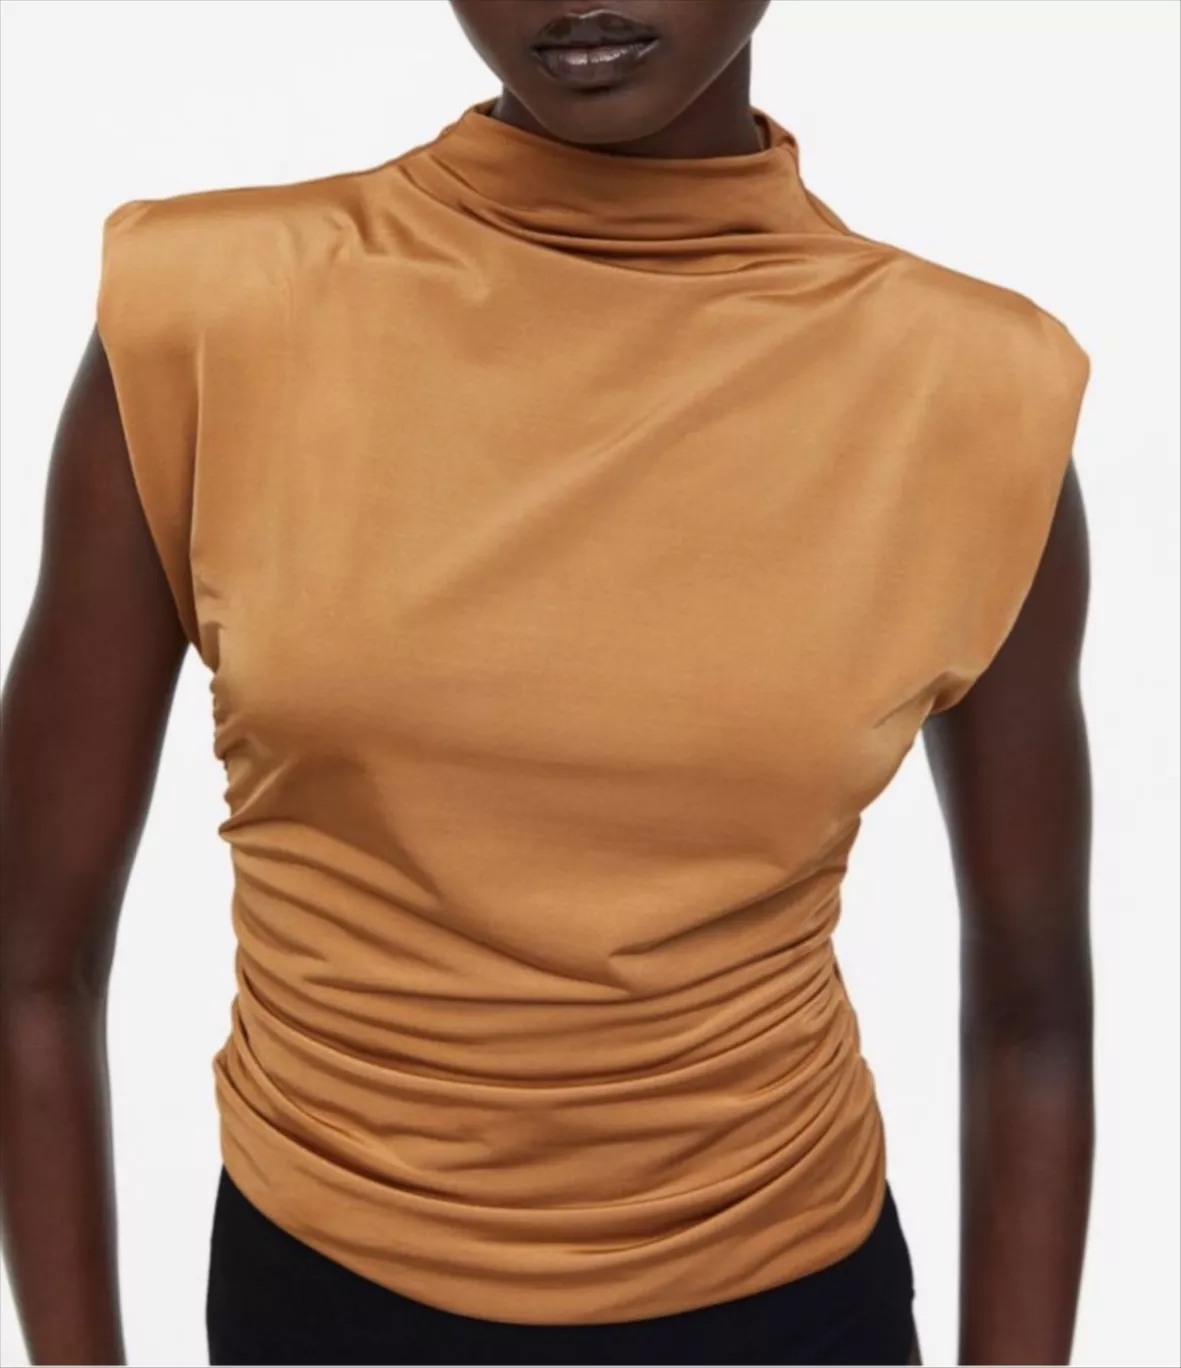 Short dress shoulder pads - Women curated on LTK